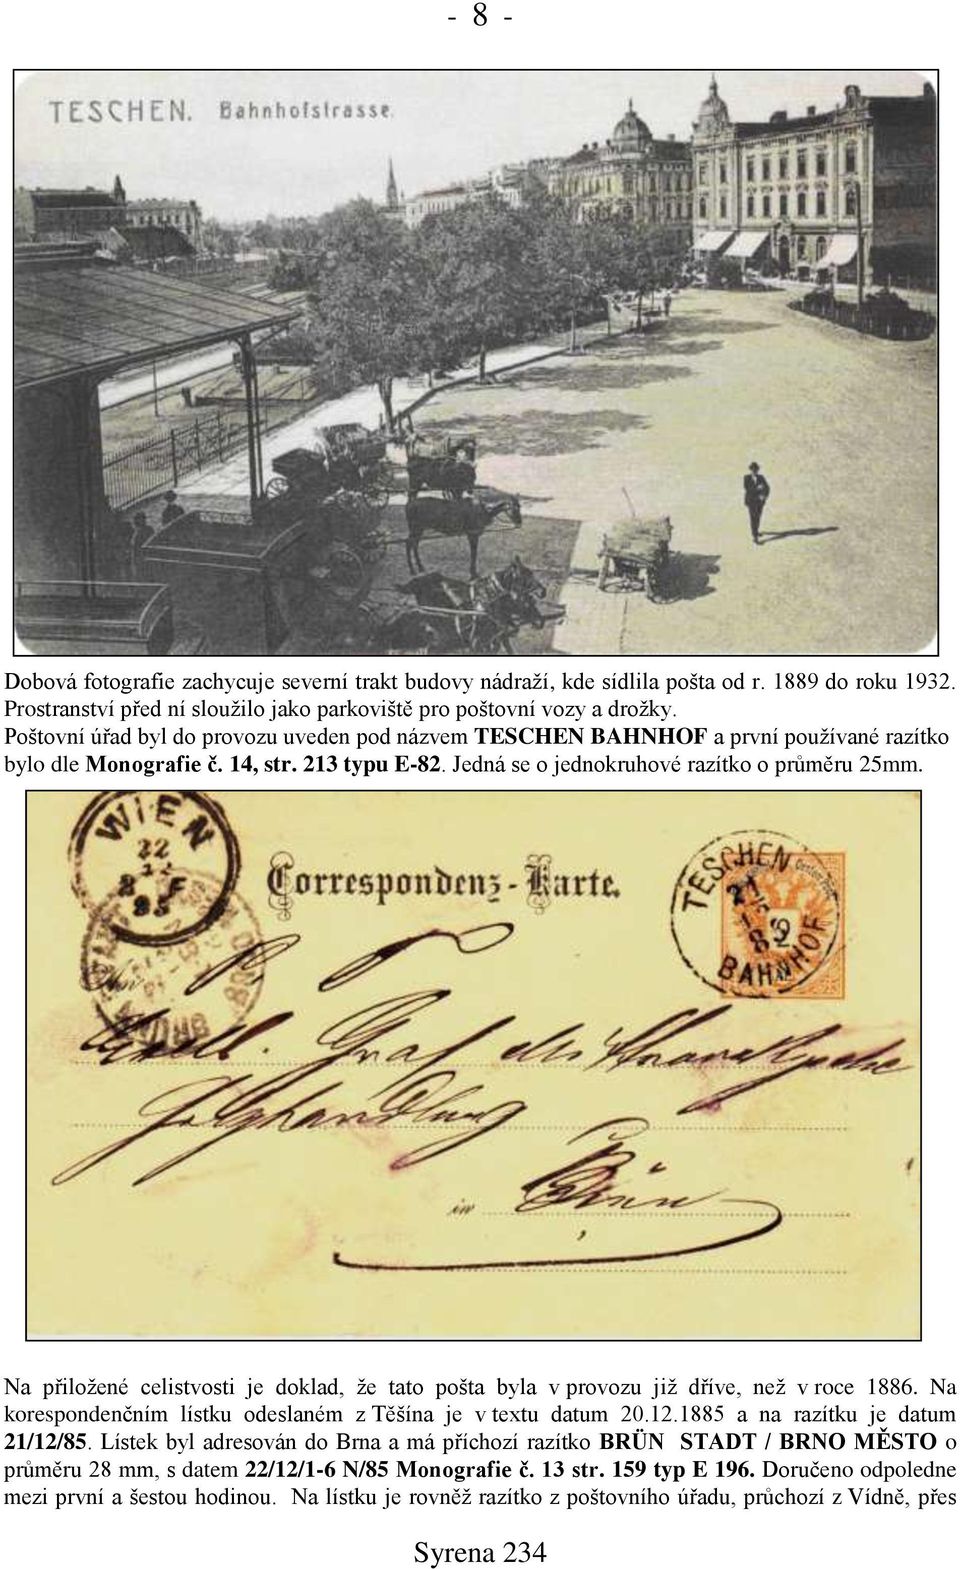 Na přiložené celistvosti je doklad, že tato pošta byla v provozu již dříve, než v roce 1886. Na korespondenčním lístku odeslaném z Těšína je v textu datum 20.12.1885 a na razítku je datum 21/12/85.